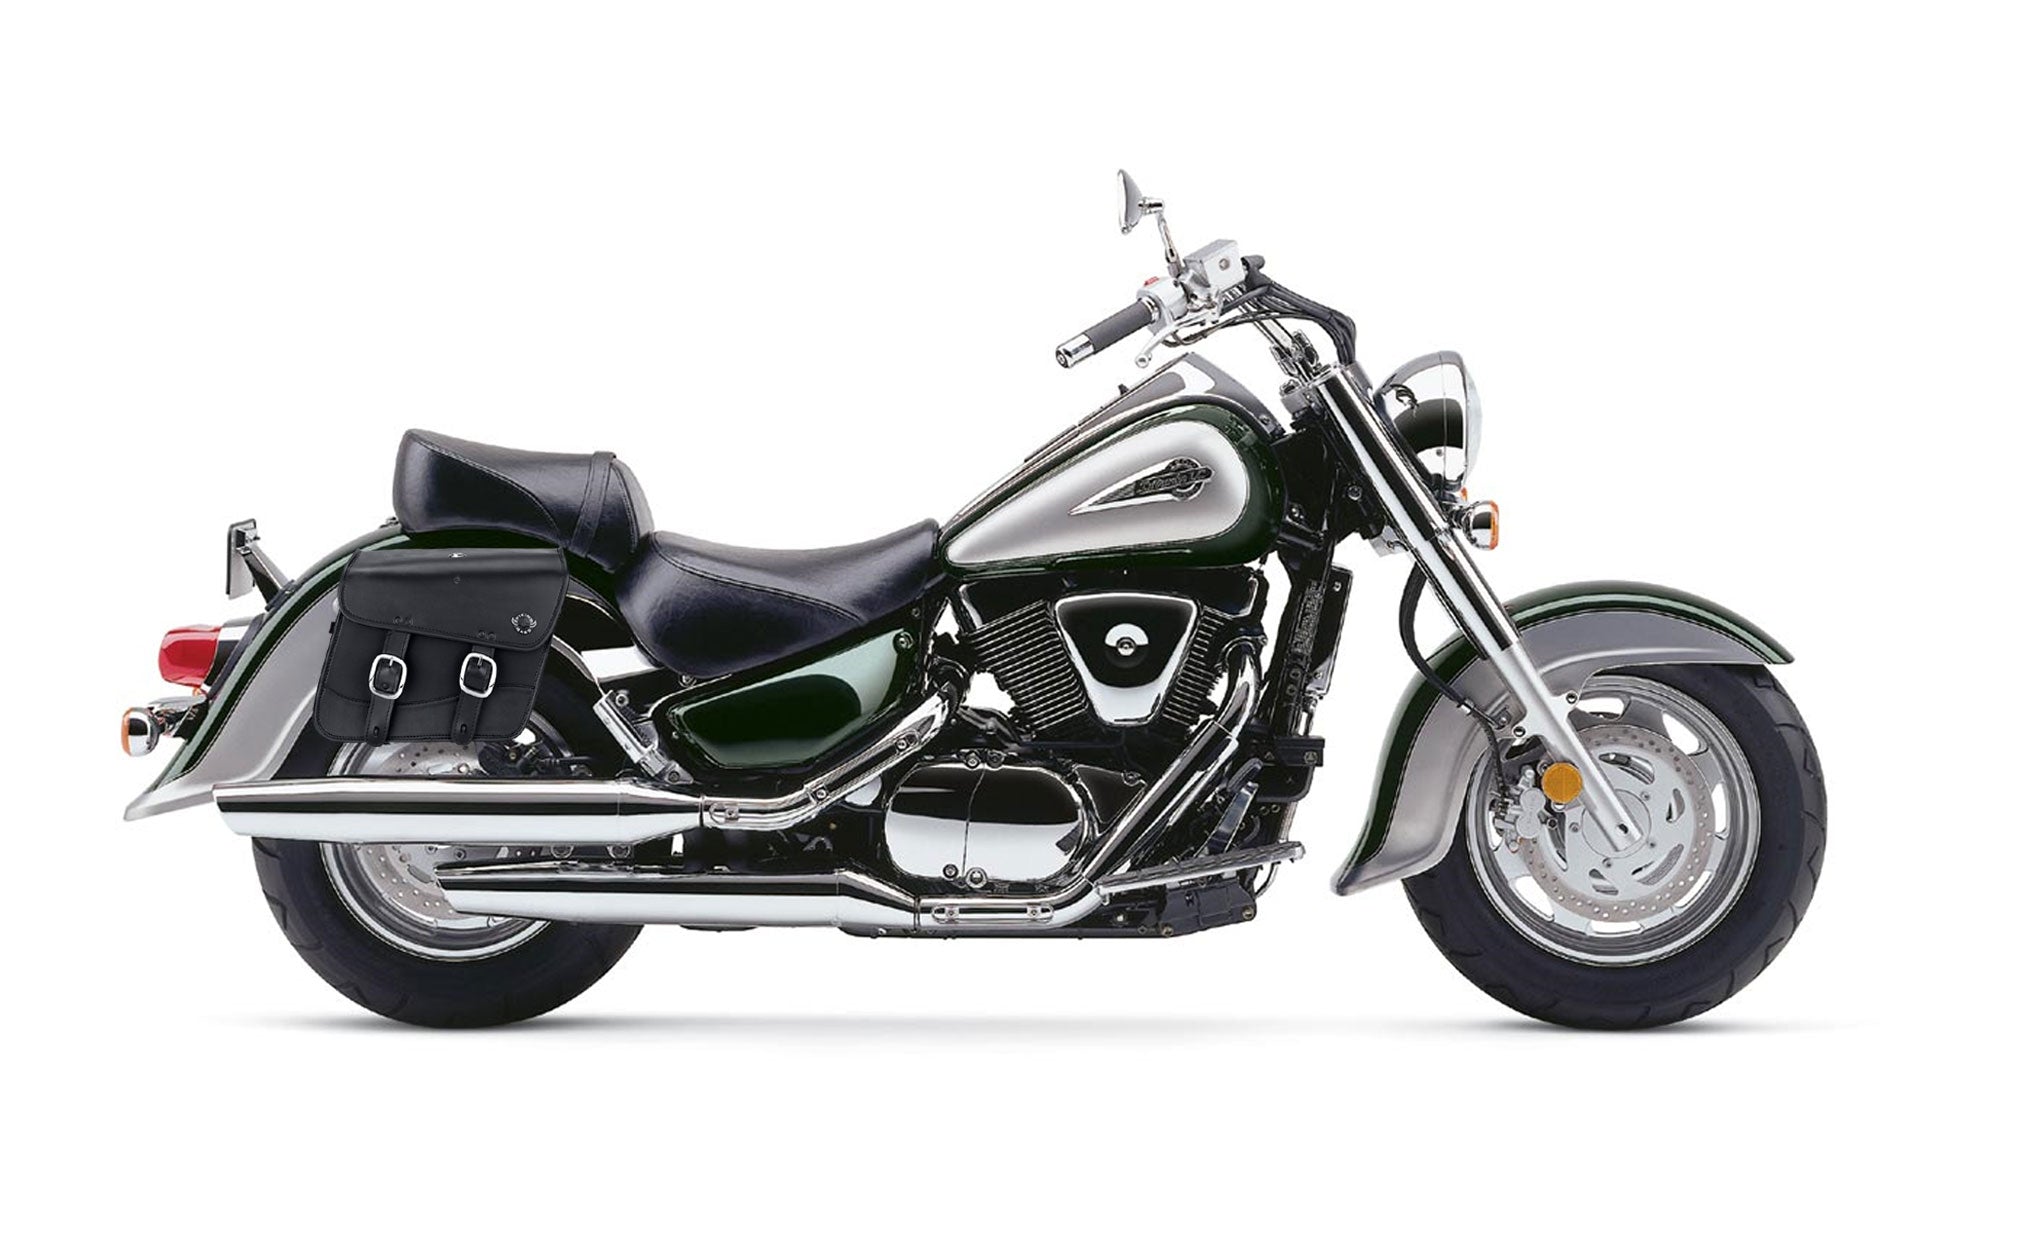 Viking Thor Medium Suzuki Intruder 1500 Vl1500 Leather Motorcycle Saddlebags on Bike Photo @expand